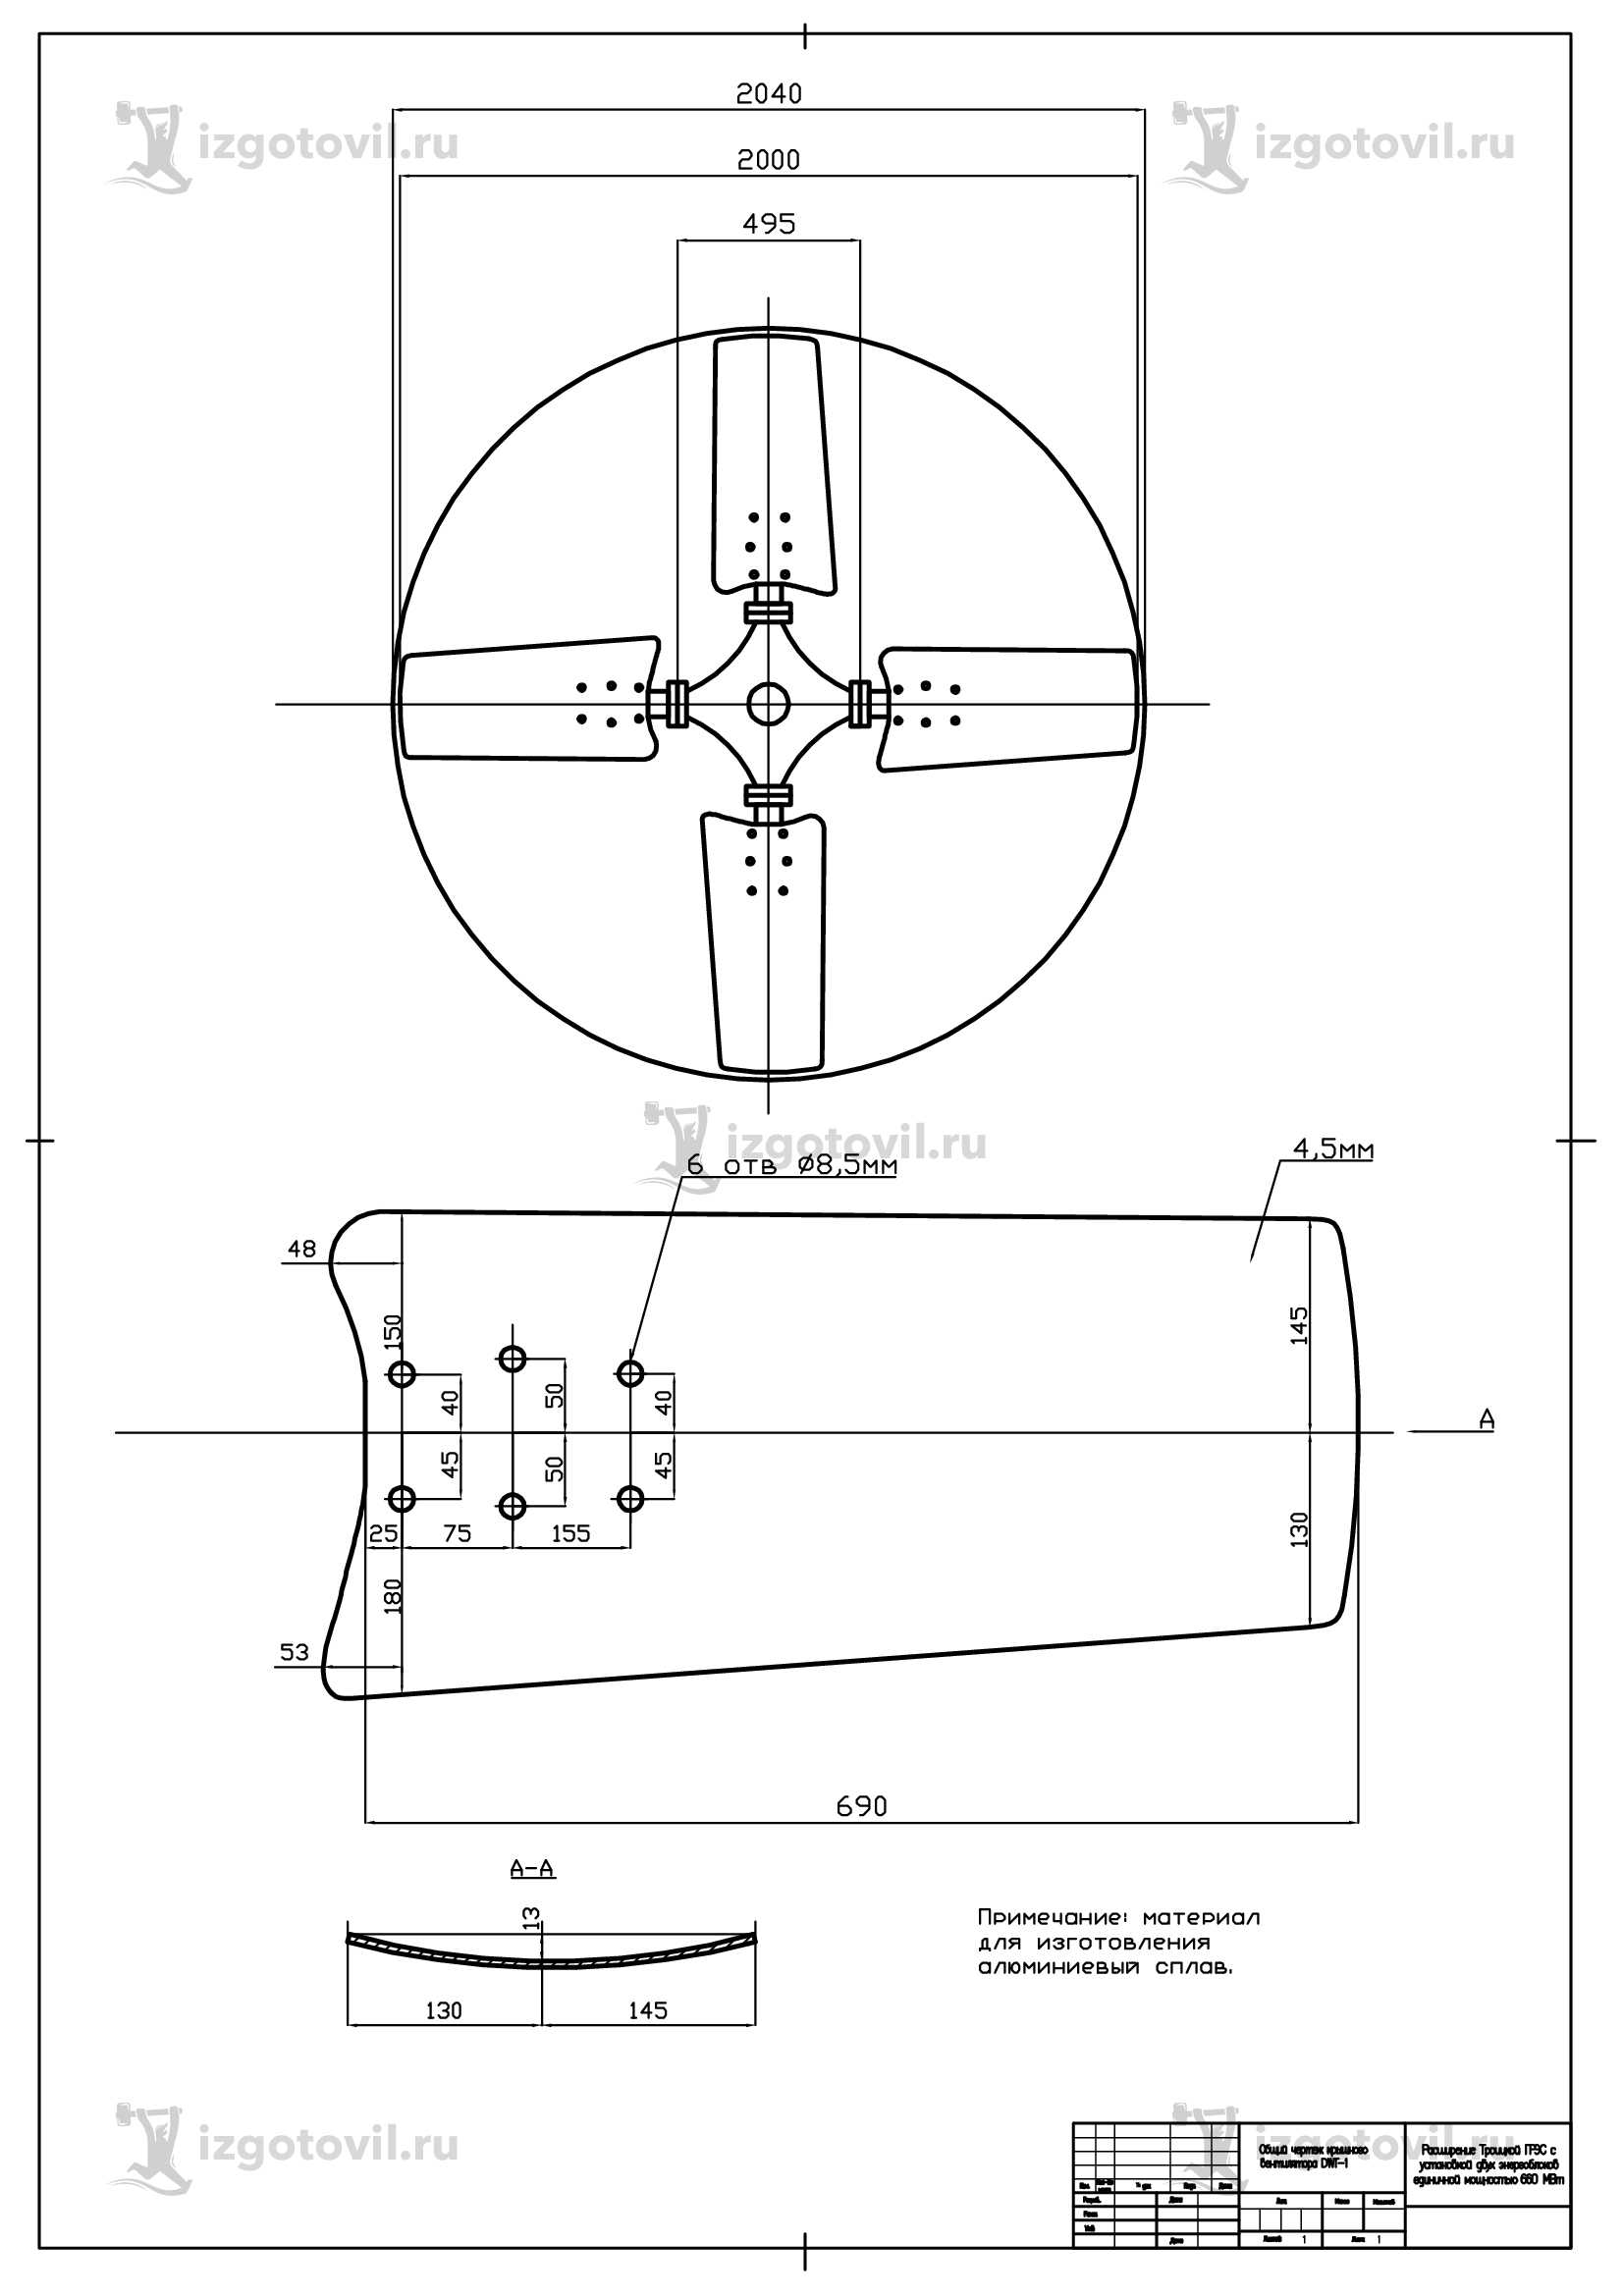 Изготовление деталей по чертежам (лопасти для крышных вентиляторов)